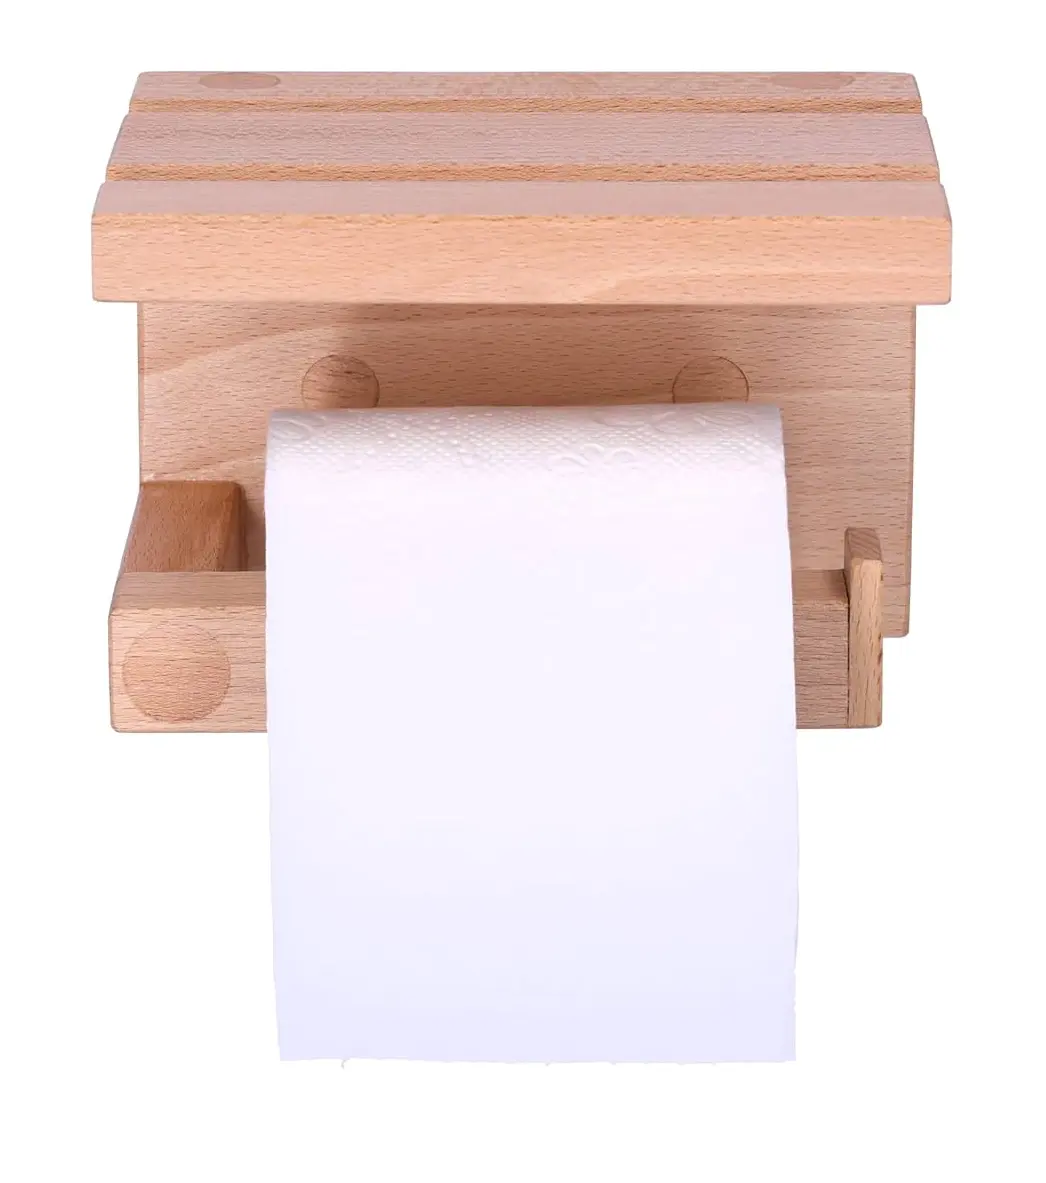 Tempat penyimpanan kayu kamar mandi tempat tisu Toilet terpasang di dinding dengan tempat penyimpanan untuk barang dekoratif jual